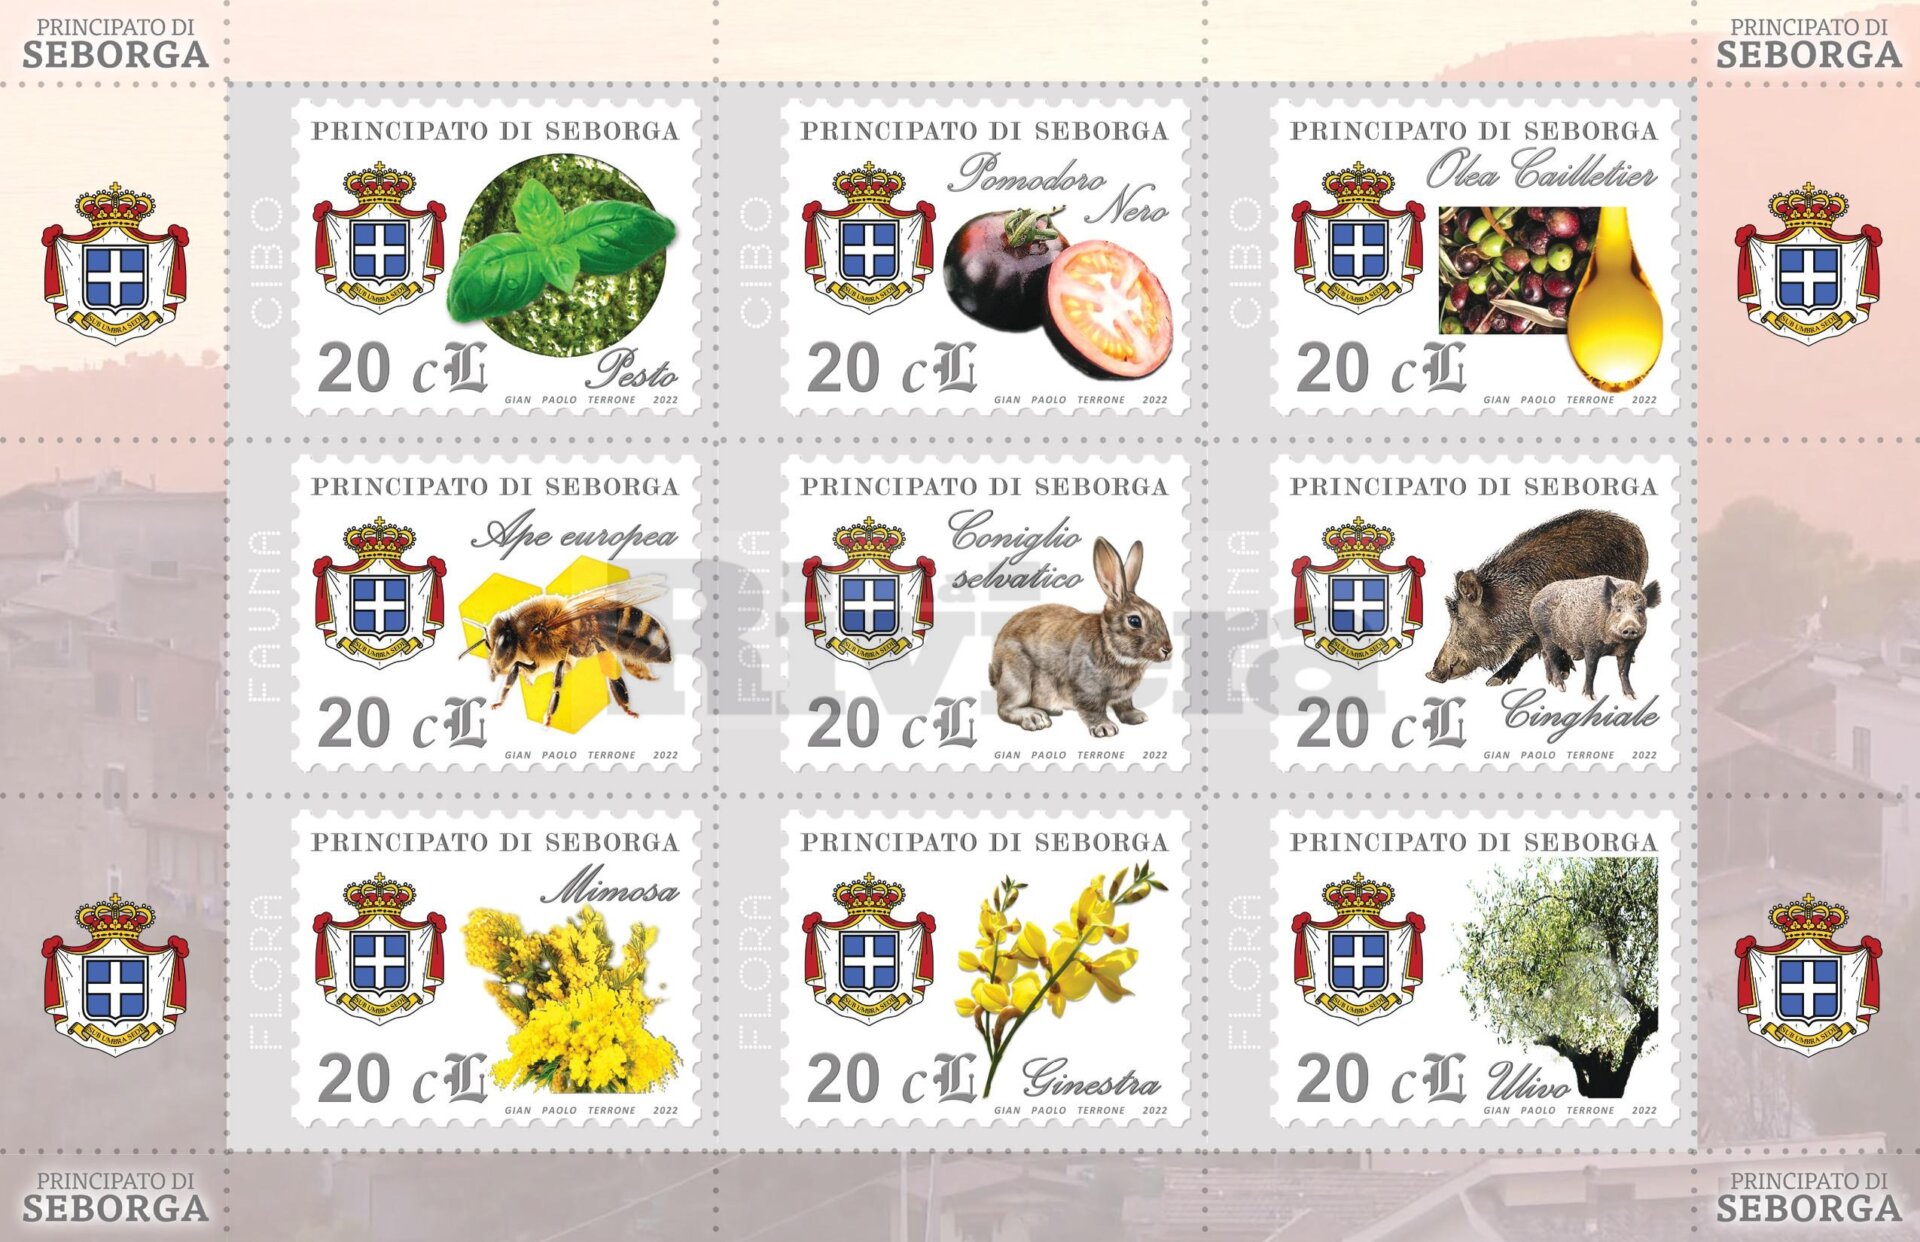 festa principato di seborga agosto 2022 francobolli